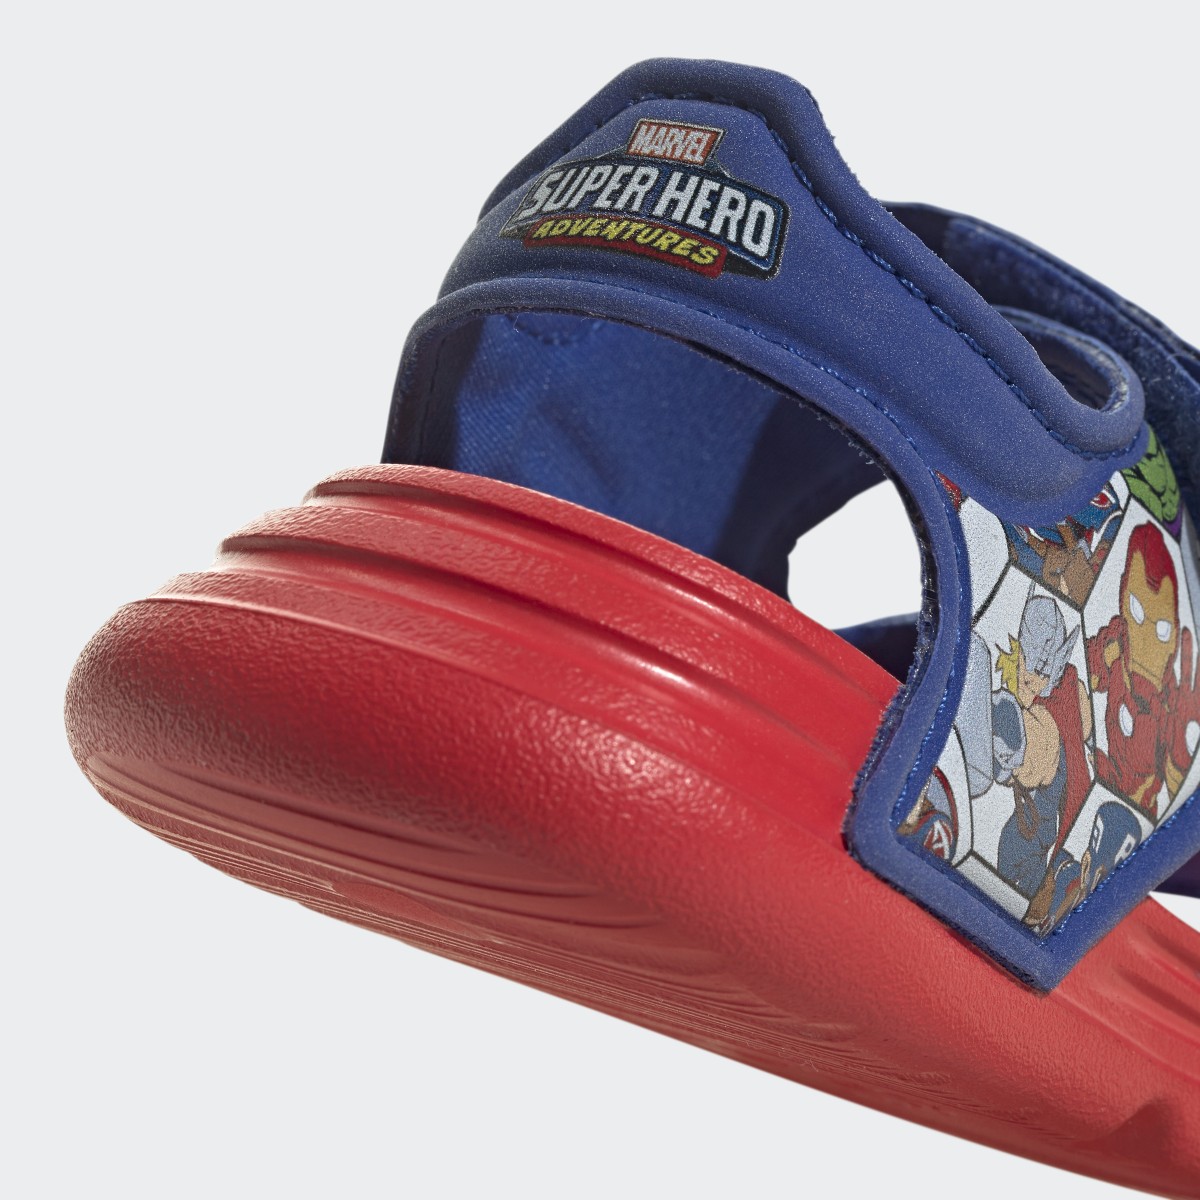 Adidas Sandali adidas x Marvel AltaSwim Super Hero Adventures. 10